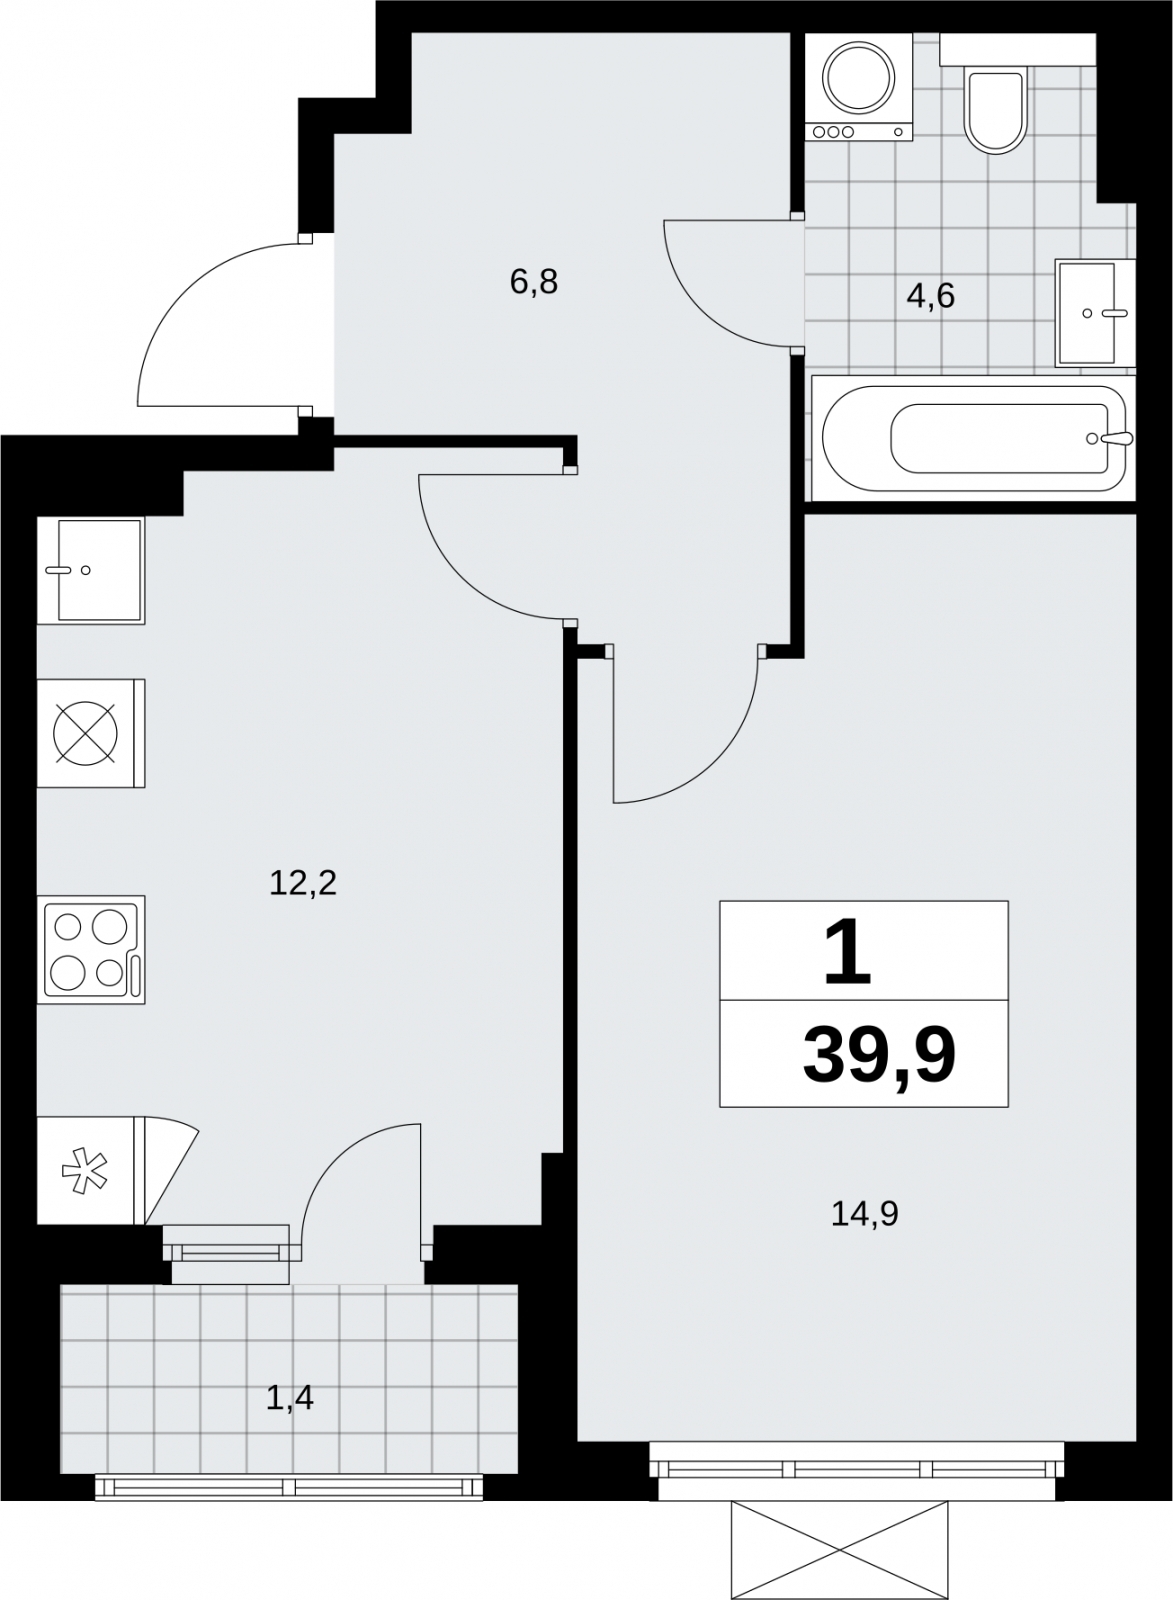 Продается просторная 1-комн. квартира с отделкой в новом жилом комплексе, рядом с метро